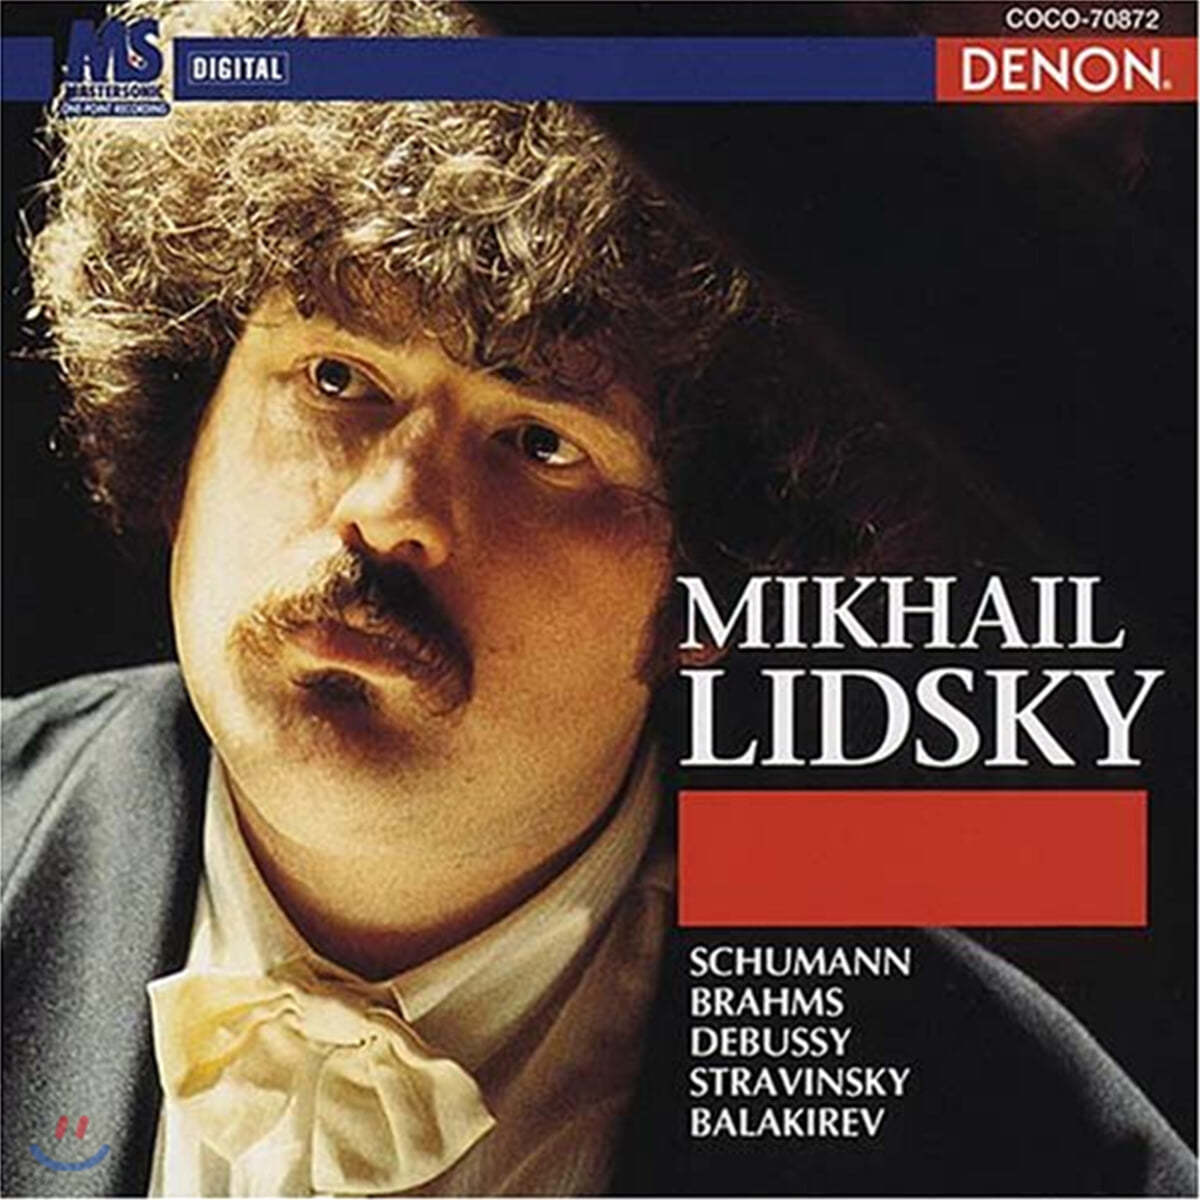 미하일 리드스키 피아노 연주집 (Mikhail Lidsky Piano Works)